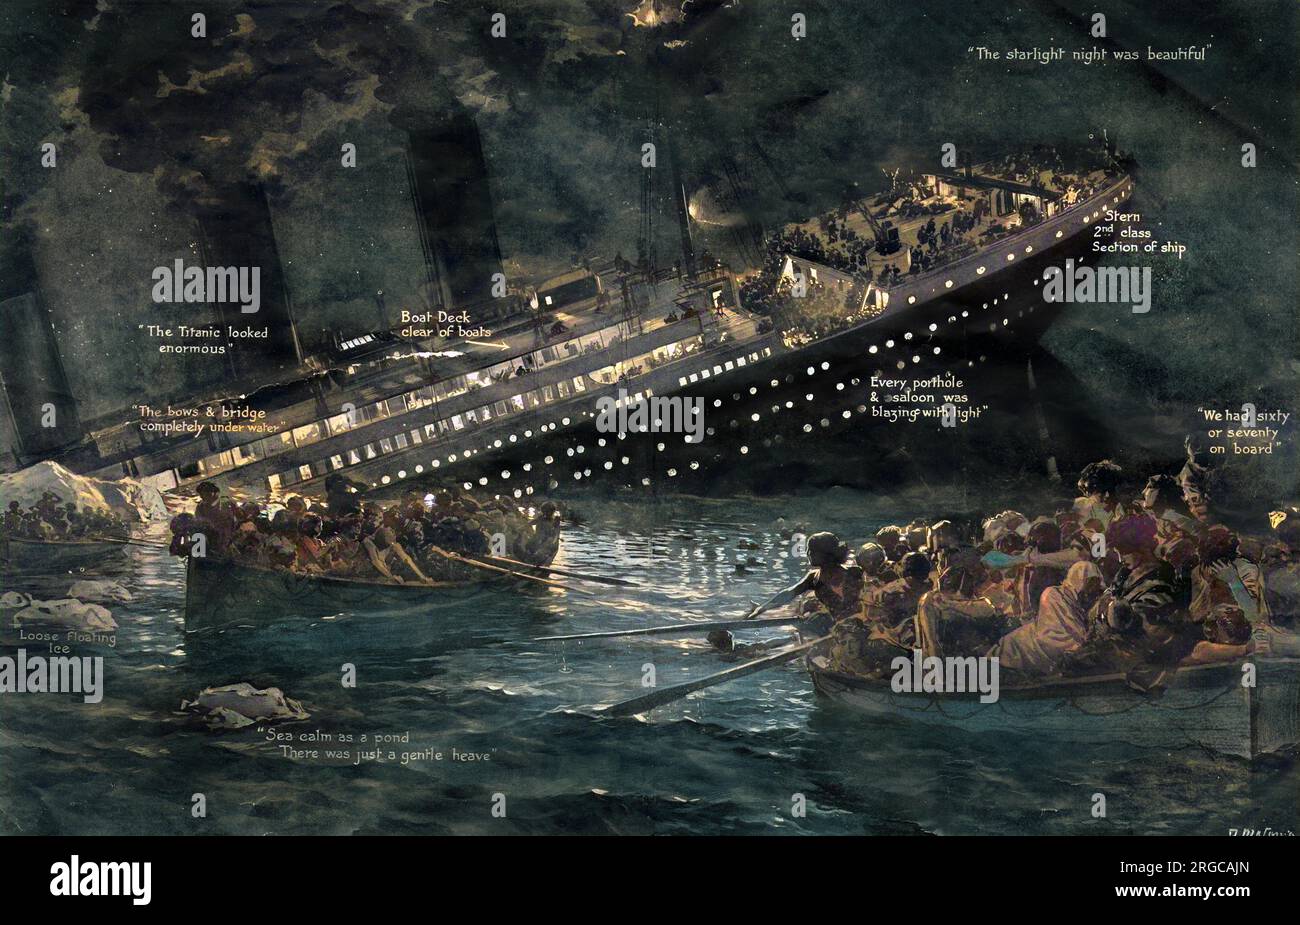 Le Titanic s'enfonce avec toutes ses lumières allumées. Les bateaux de la vie pleins de survieurs peuvent être vus au premier plan. Banque D'Images